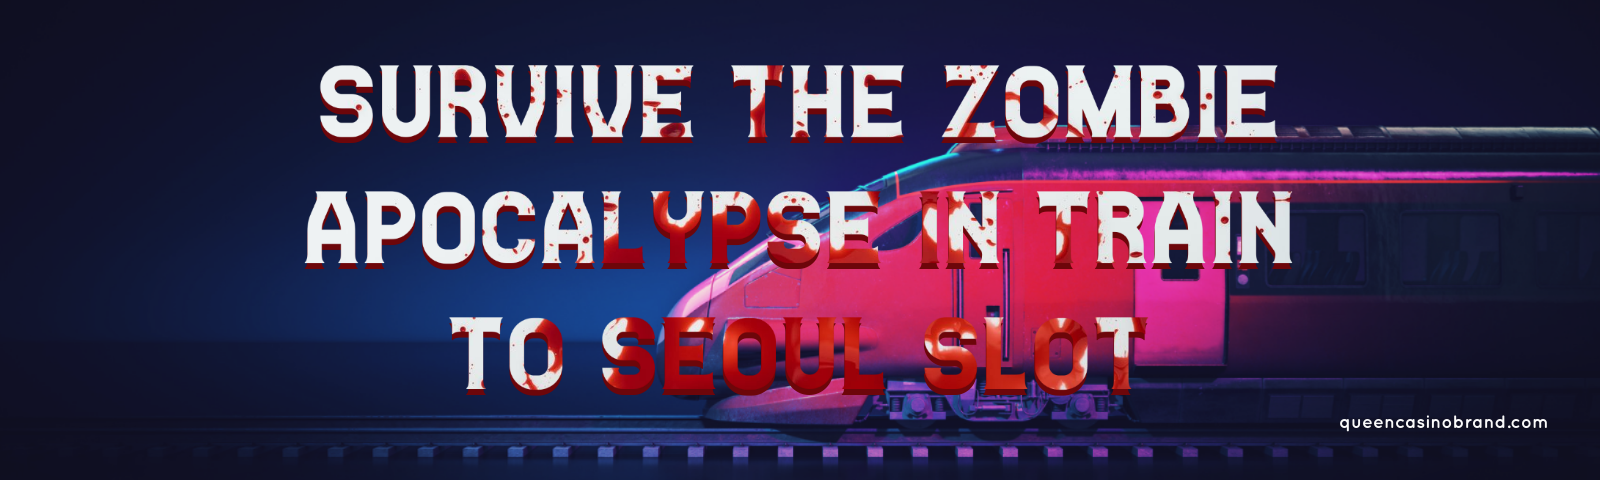 Board the Train to Seoul Slot - Queen Casino Brand